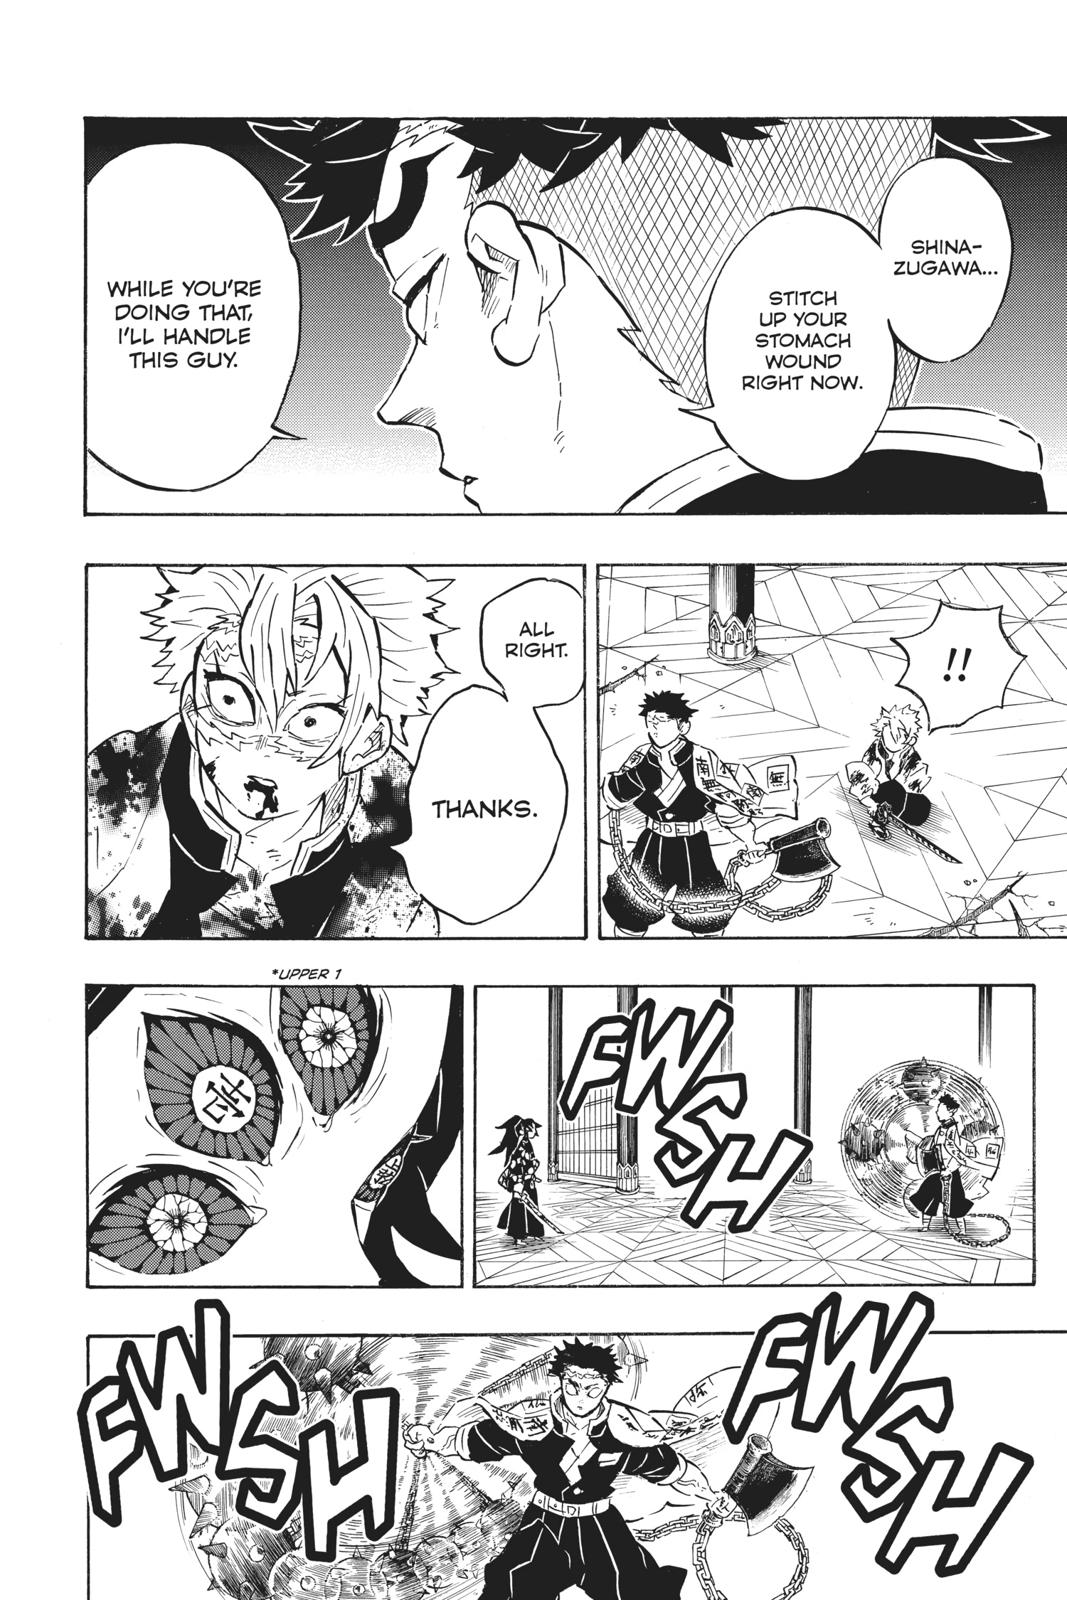 Demon Slayer Manga Manga Chapter - 169 - image 2